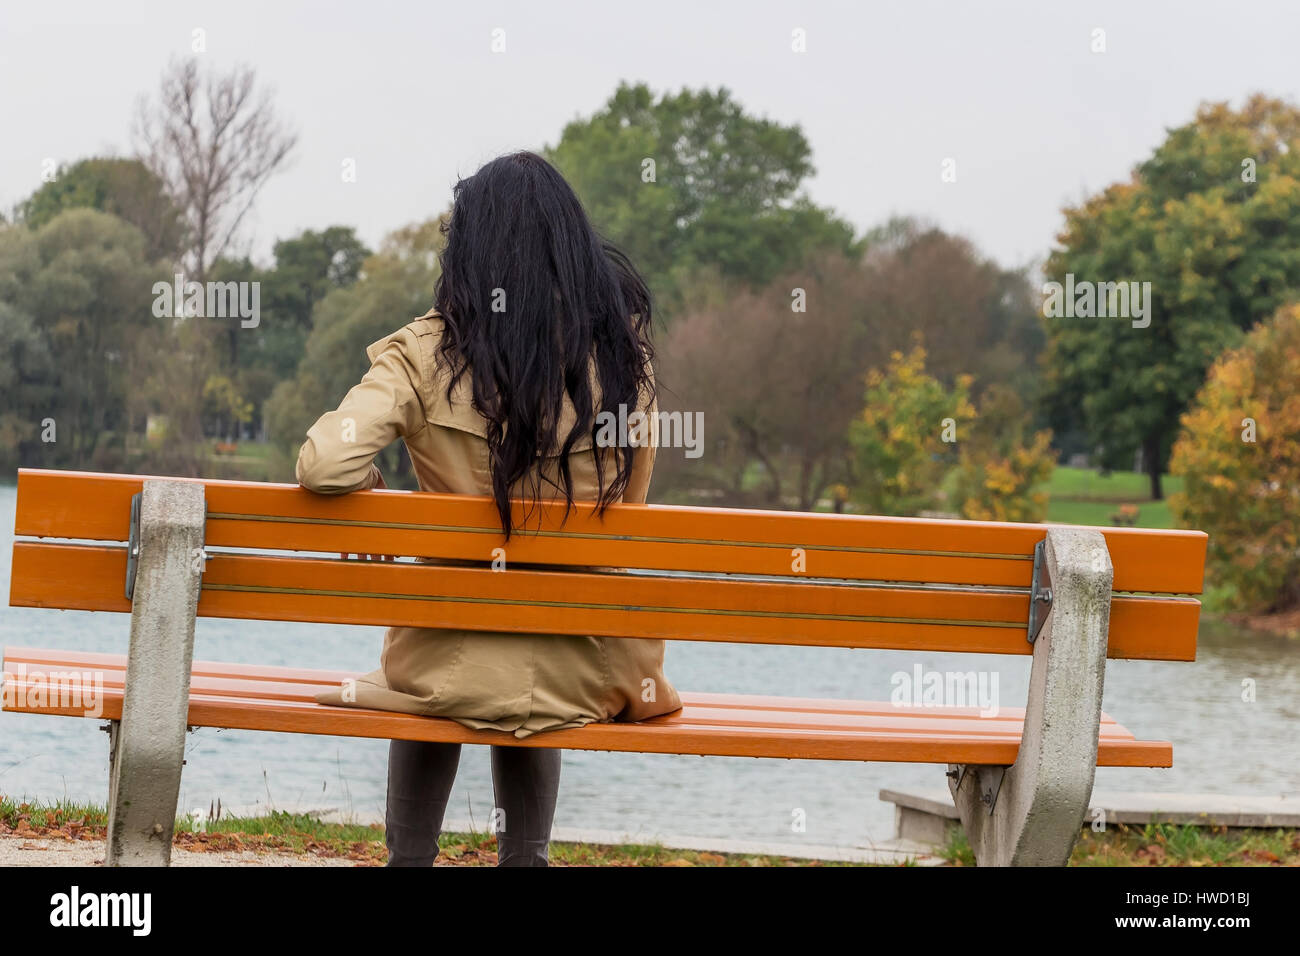 Una giovane donna siede pensieroso su un parco-banco, Eine junge Frau sitzt nachdenklich auf einer Parkbank Foto Stock